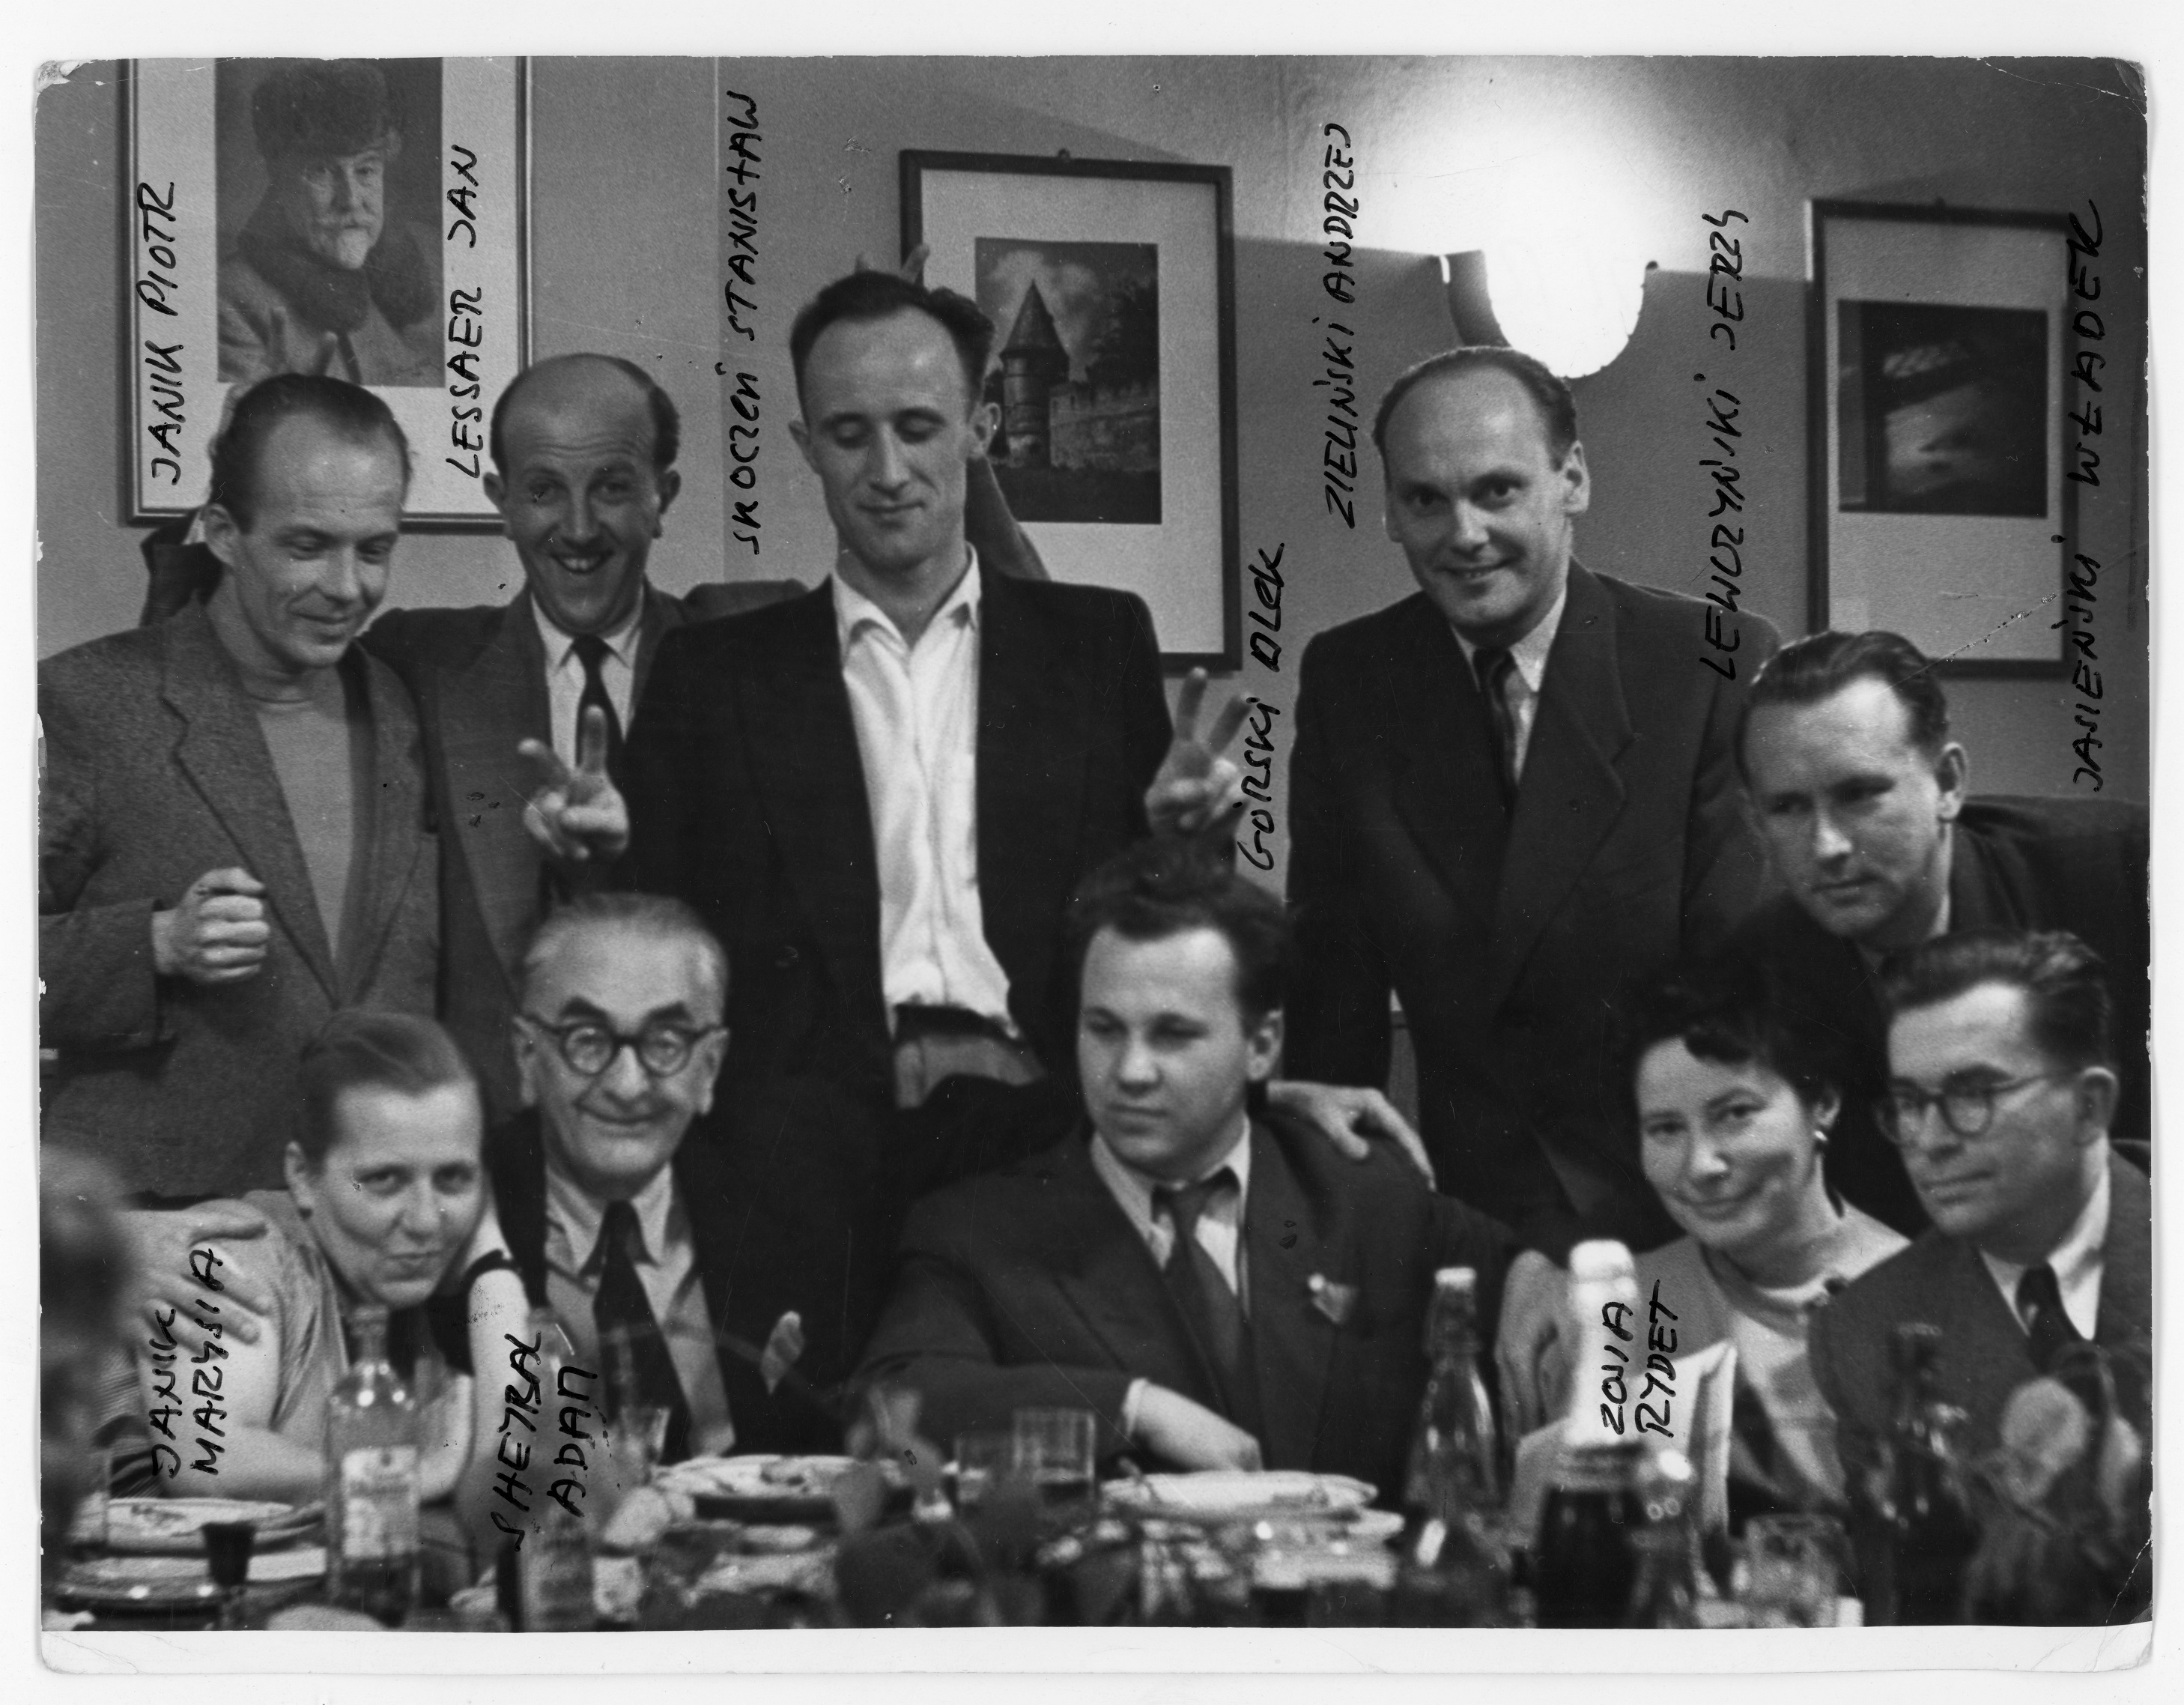 zdjęcie elgancko ubranej grupy ludzi przy stoliku w sali restauracyjnej